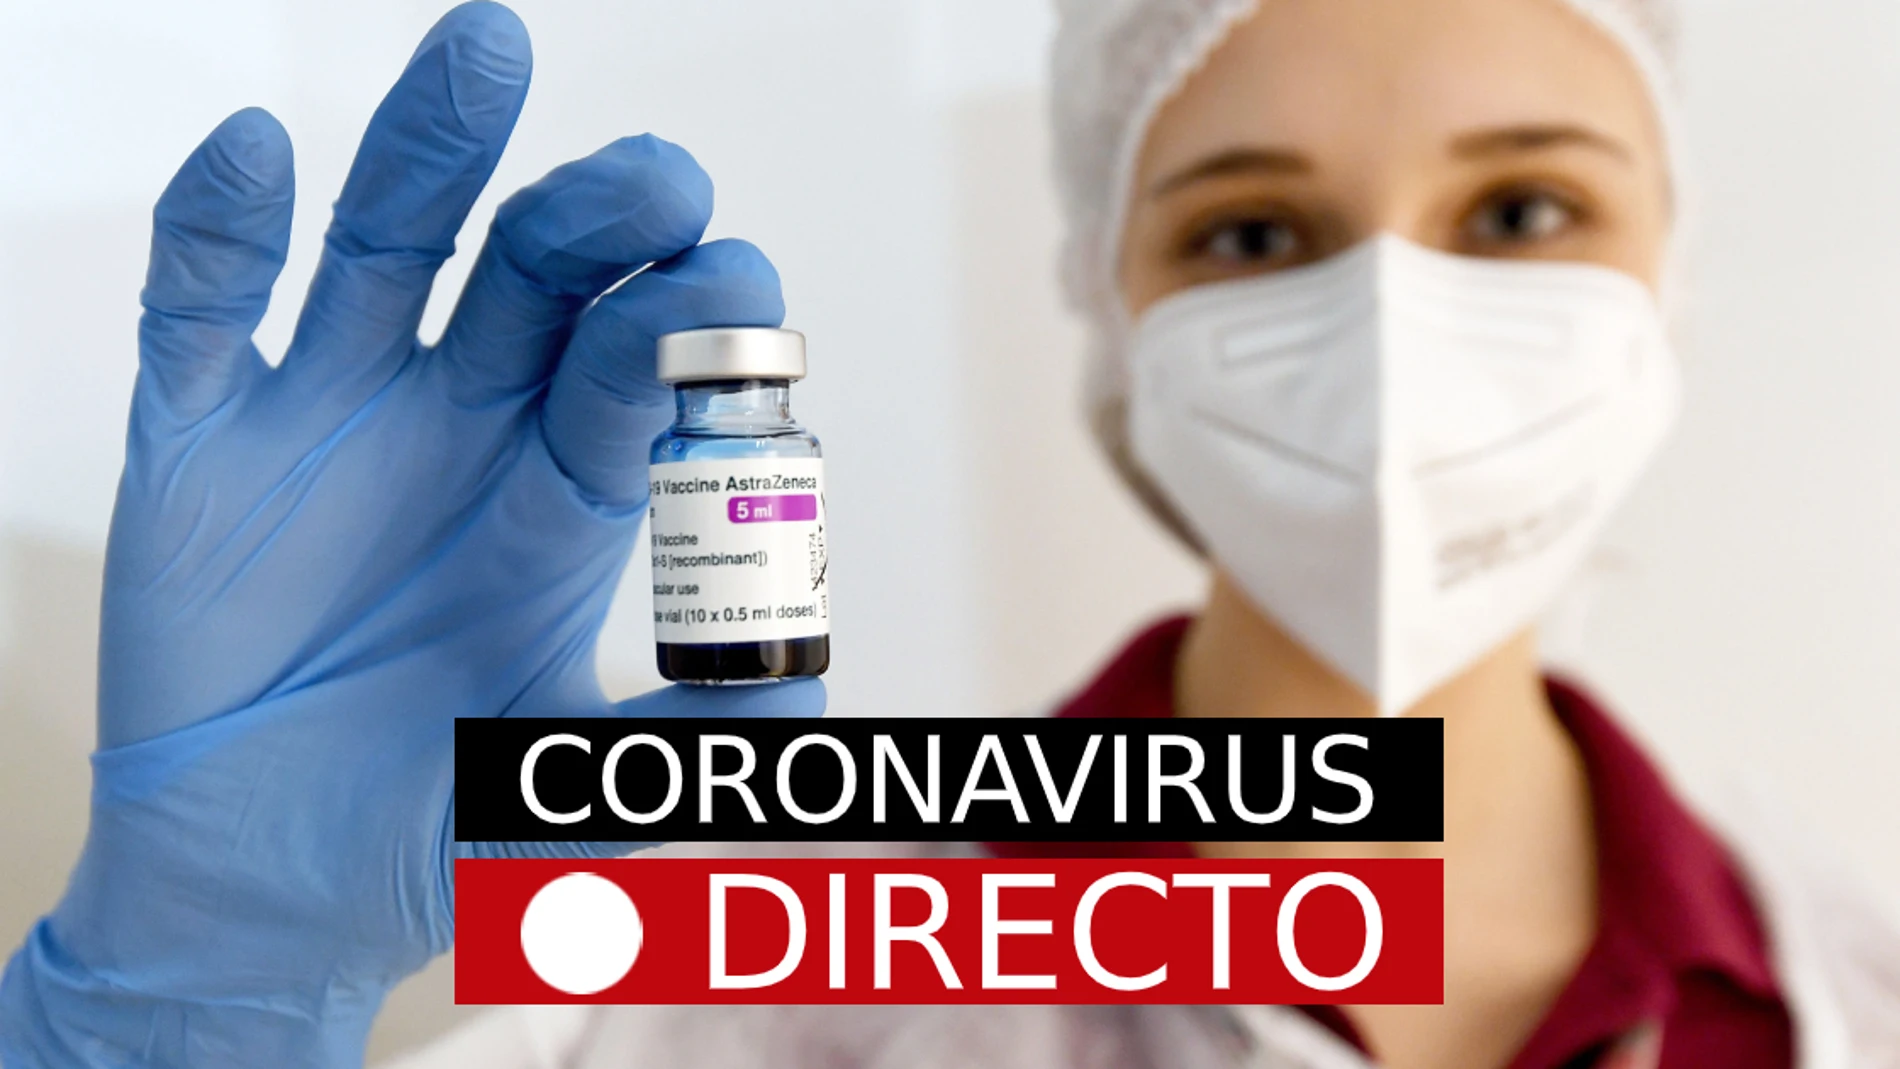 COVID-19 | Últimas noticias sobre los lotes de la vacuna AstraZeneca retirados y la OMS Y EMA, en directo